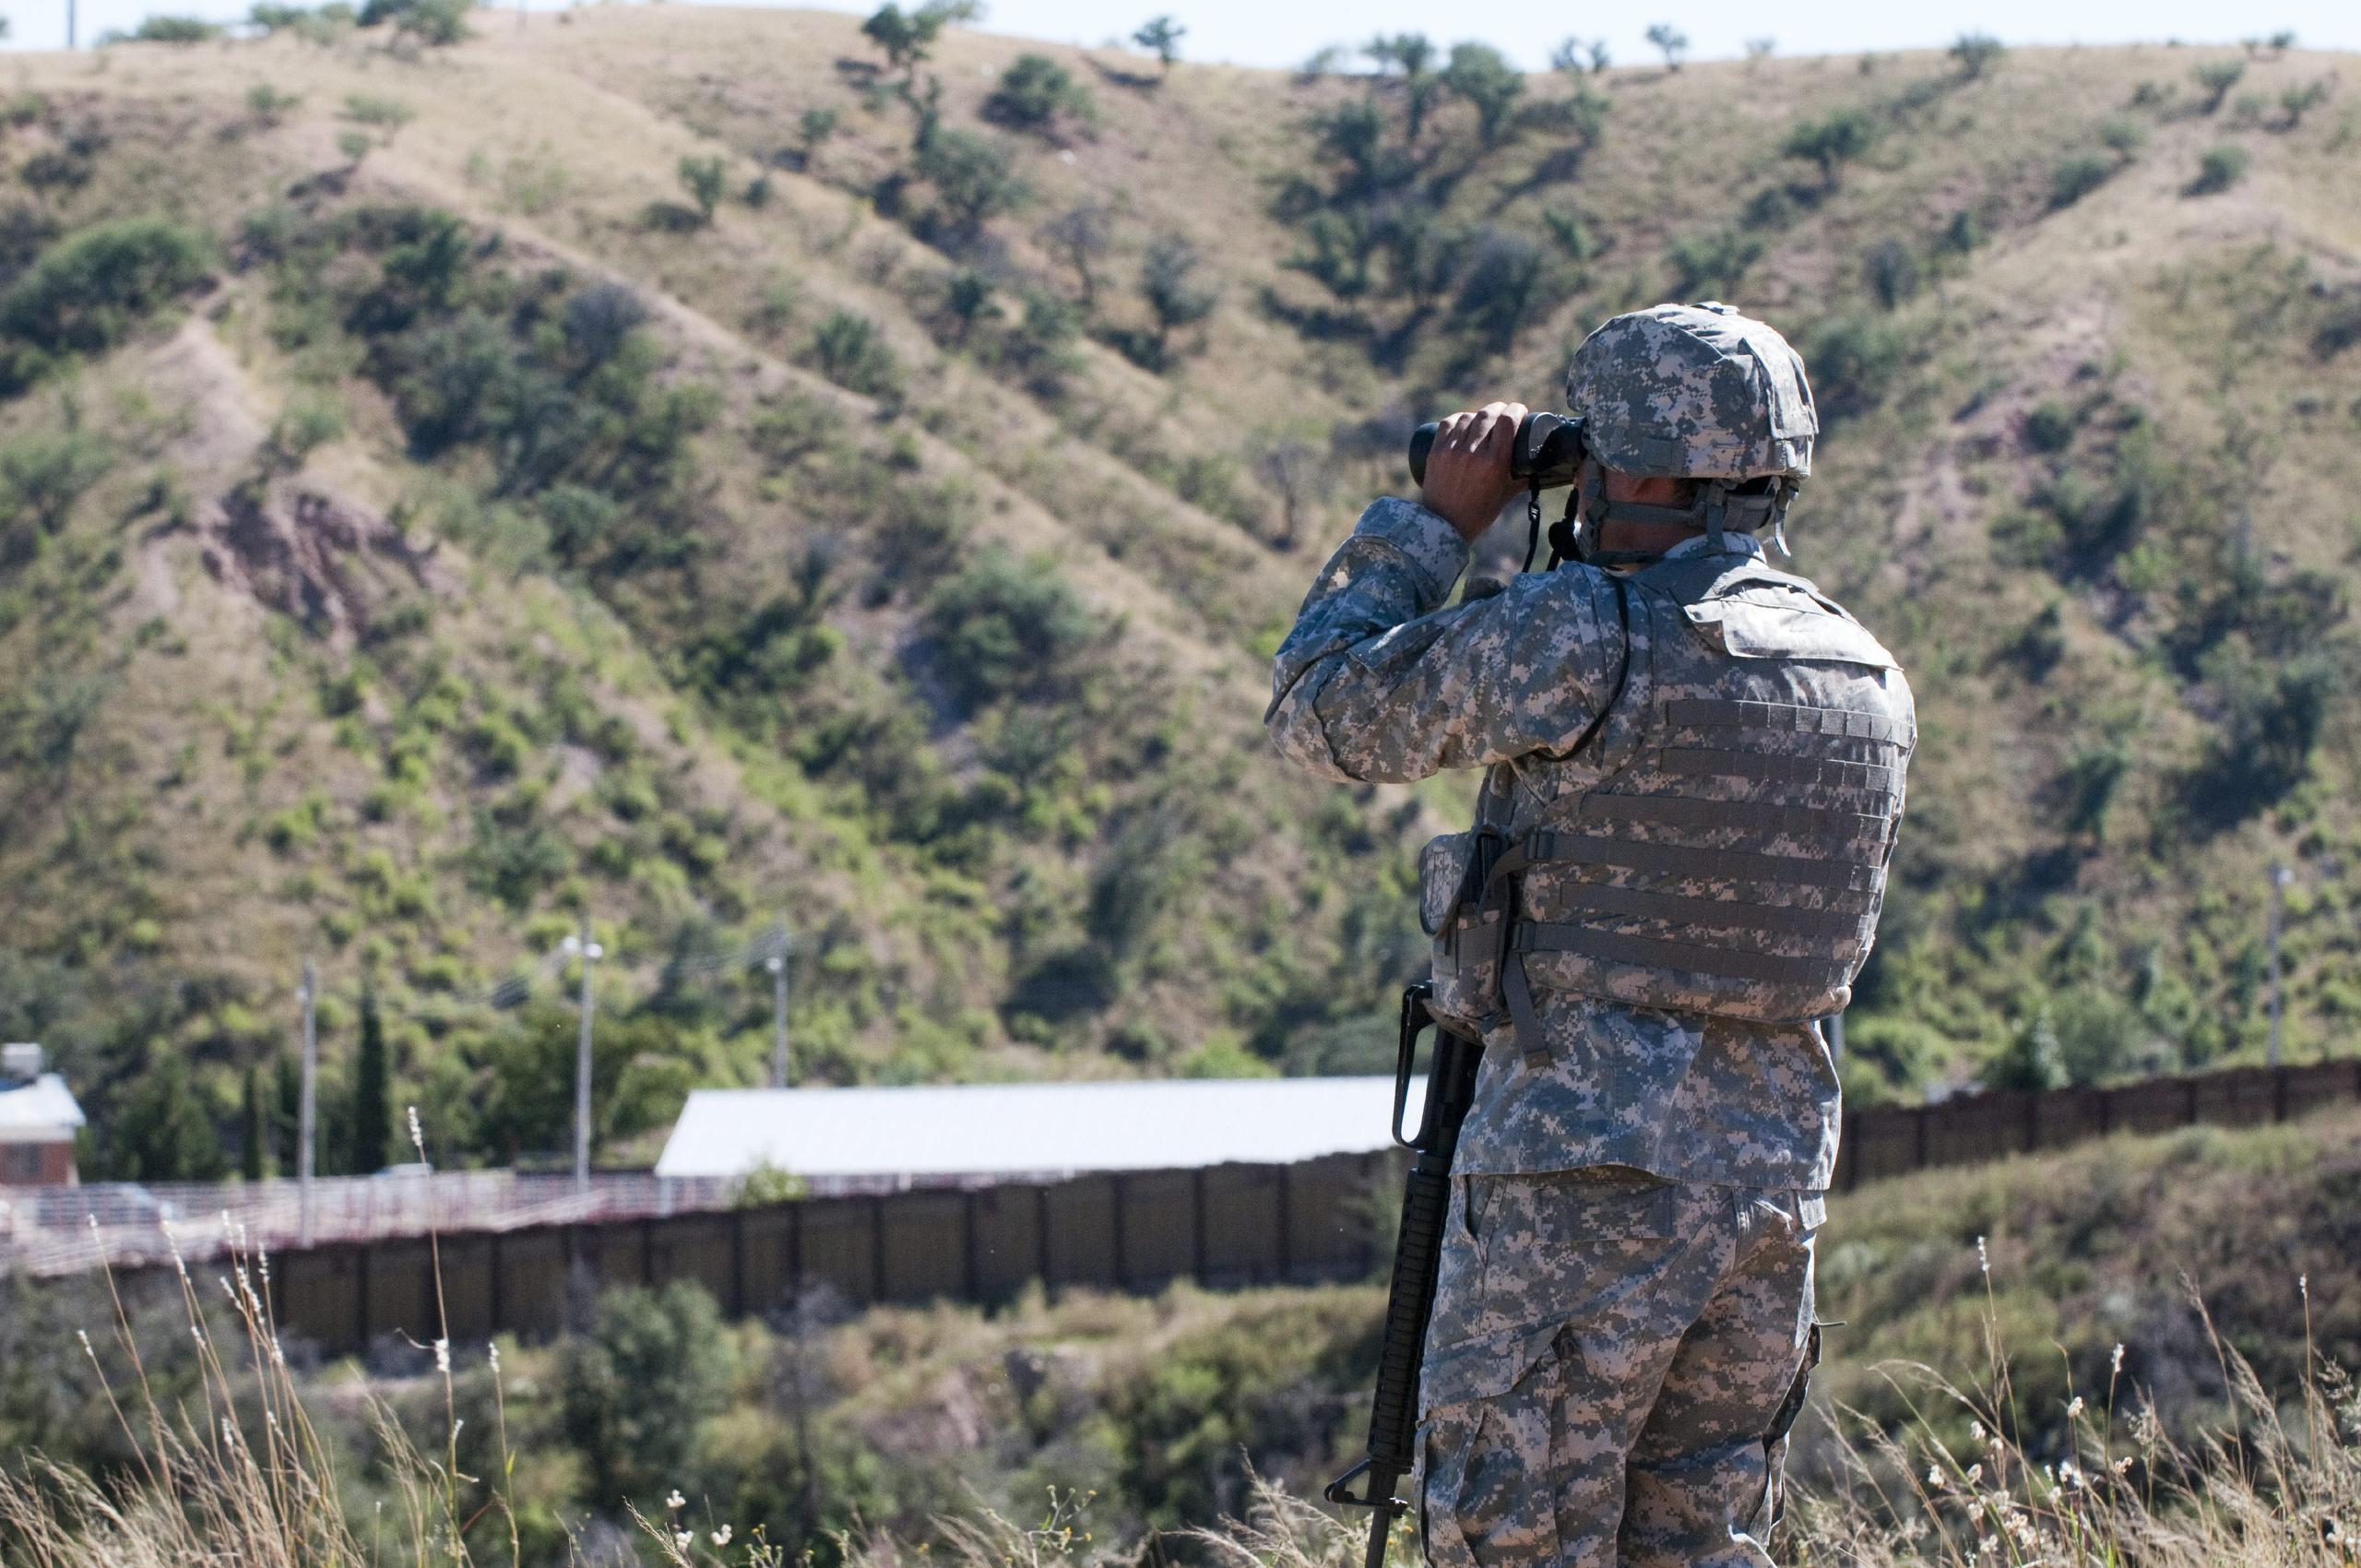 Un informe de la Patrulla Fronteriza de Estados Unidos, explicó que el personal militar notificó que “un migrante fue visto apuñalando a una persona en el lado de México” por lo que el soldado disparó.